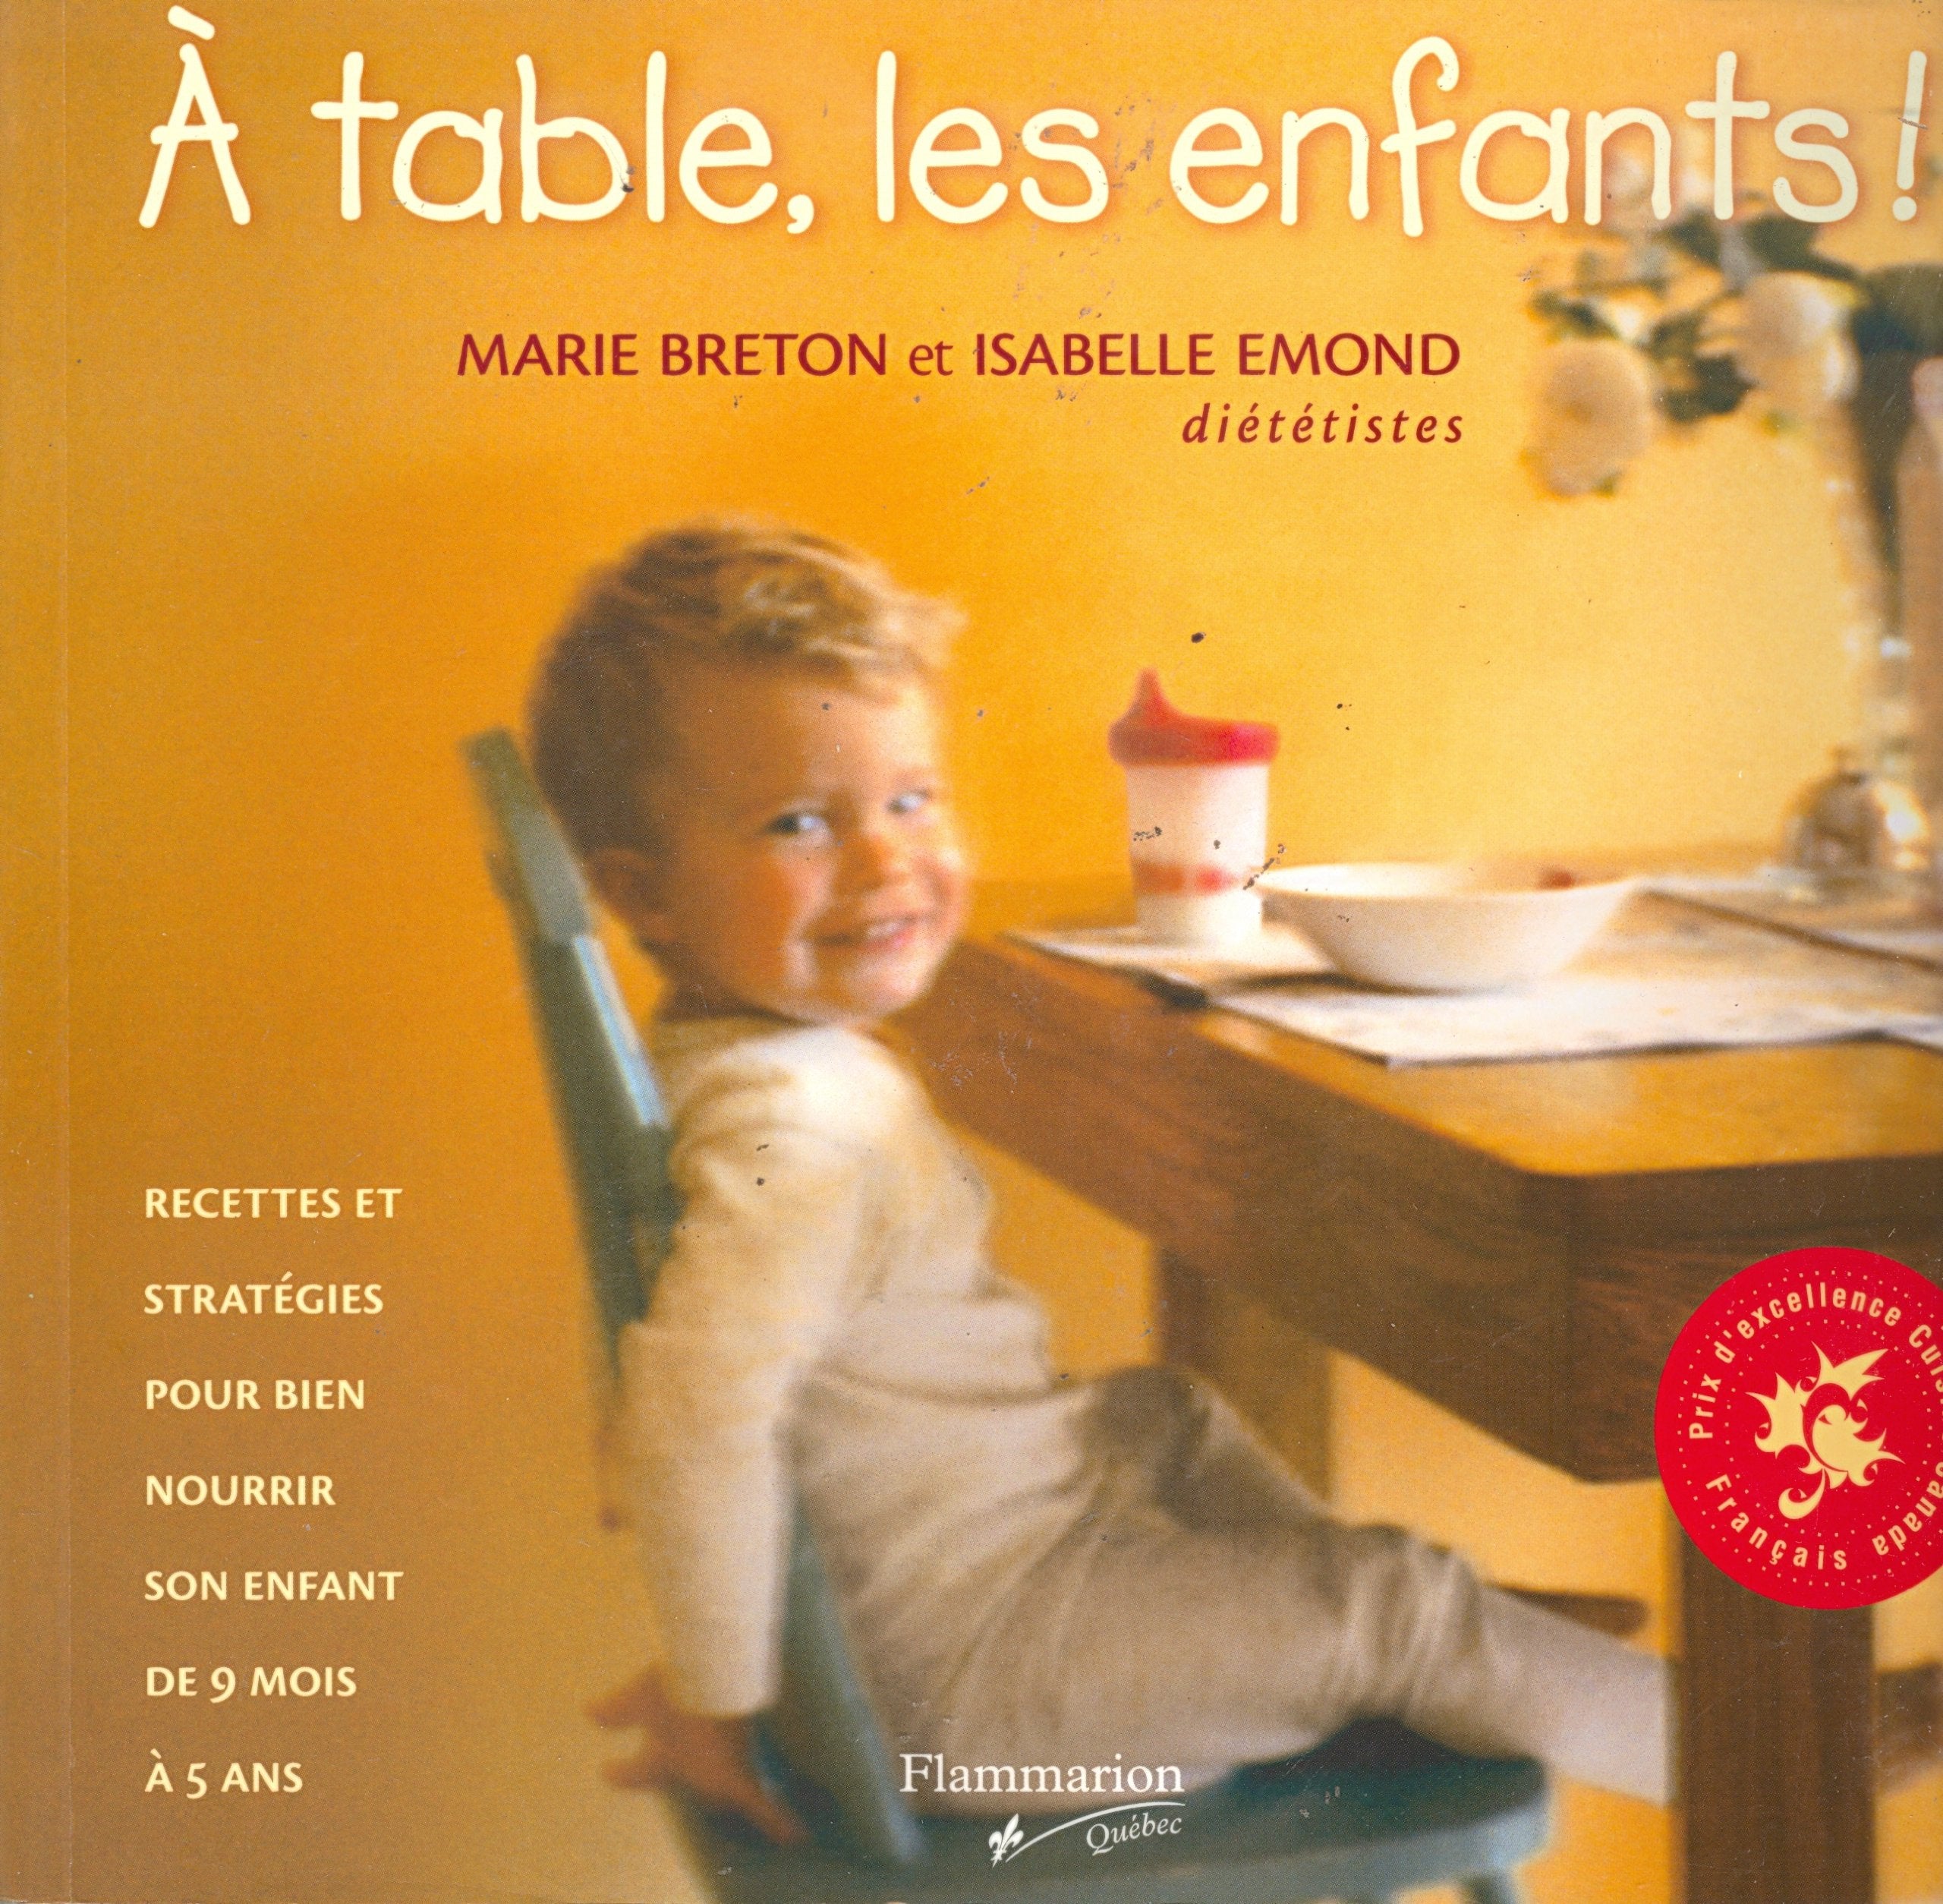 Livre ISBN 2890772365 À table, les enfants ! Recettes et stratégies pour bien nourrir son enfant de 9 mois à 5 ans (Marie Breton)